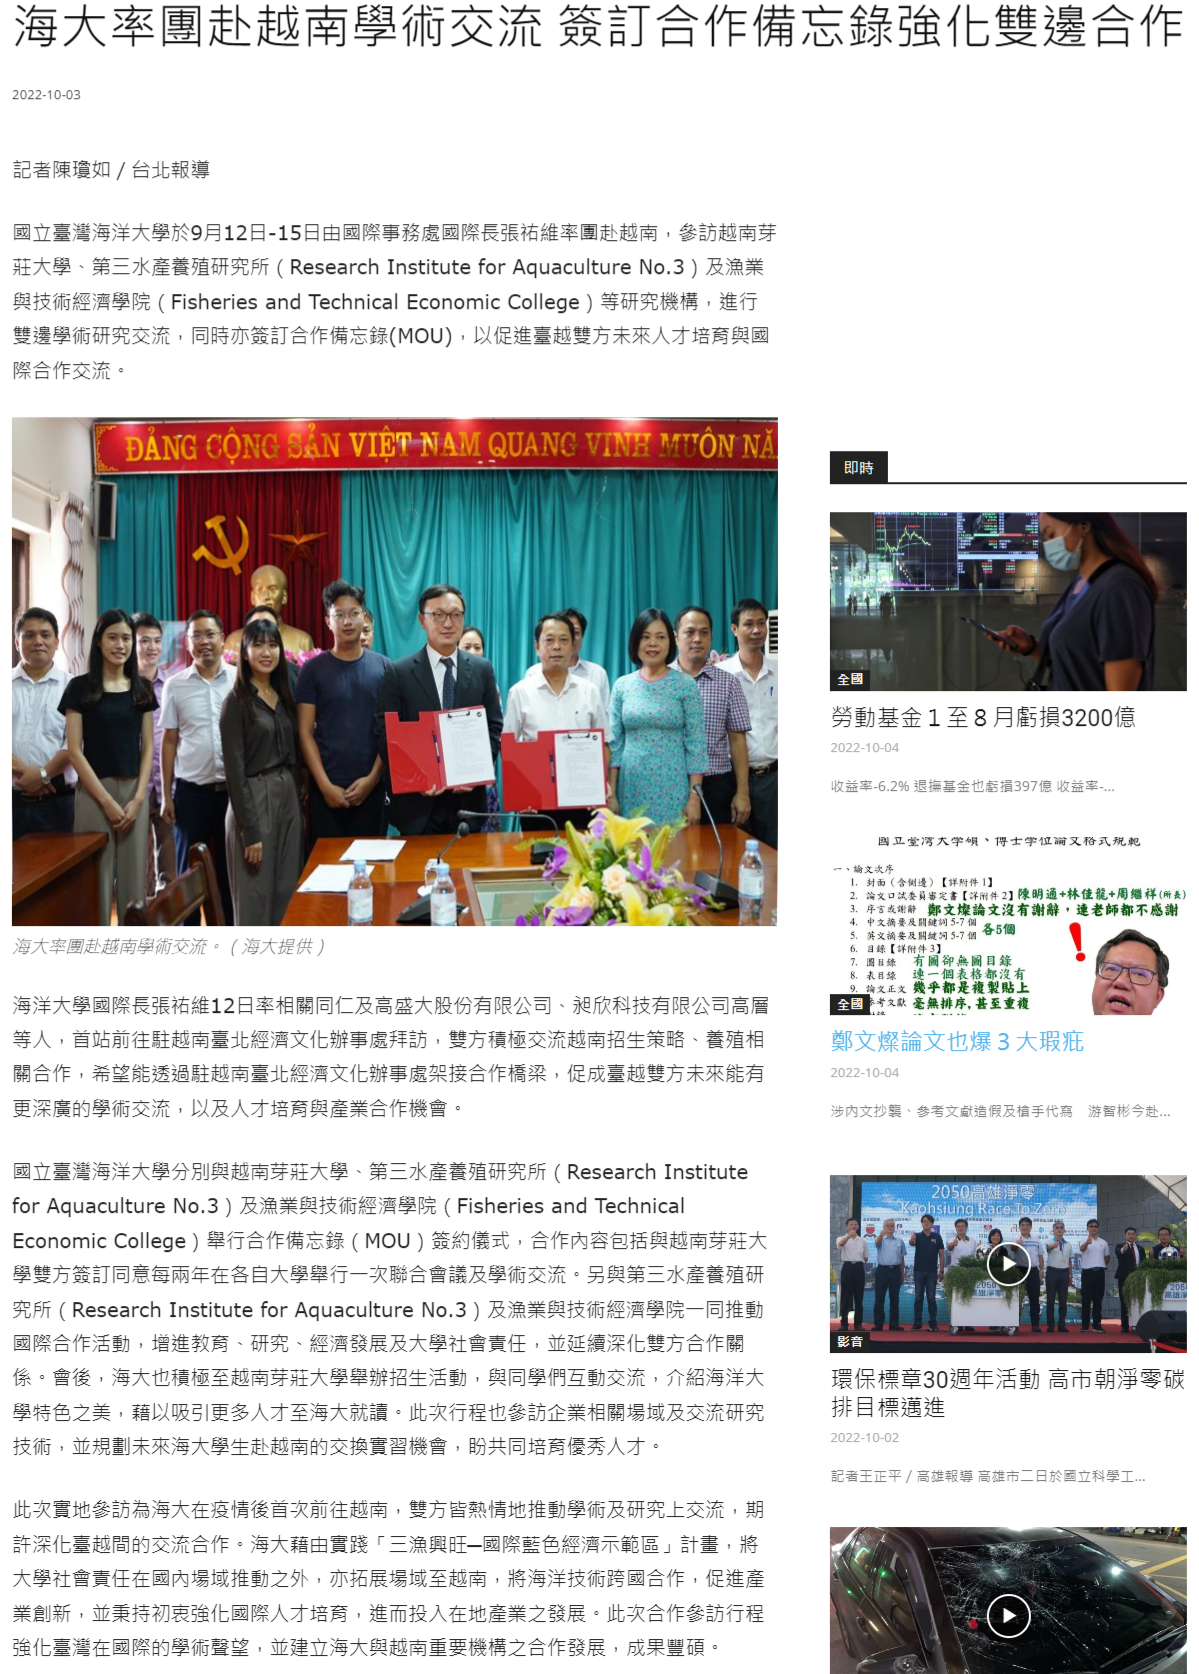 海大率團赴越南學術交流 簽訂合作備忘錄強化雙邊合作 - 中華日報